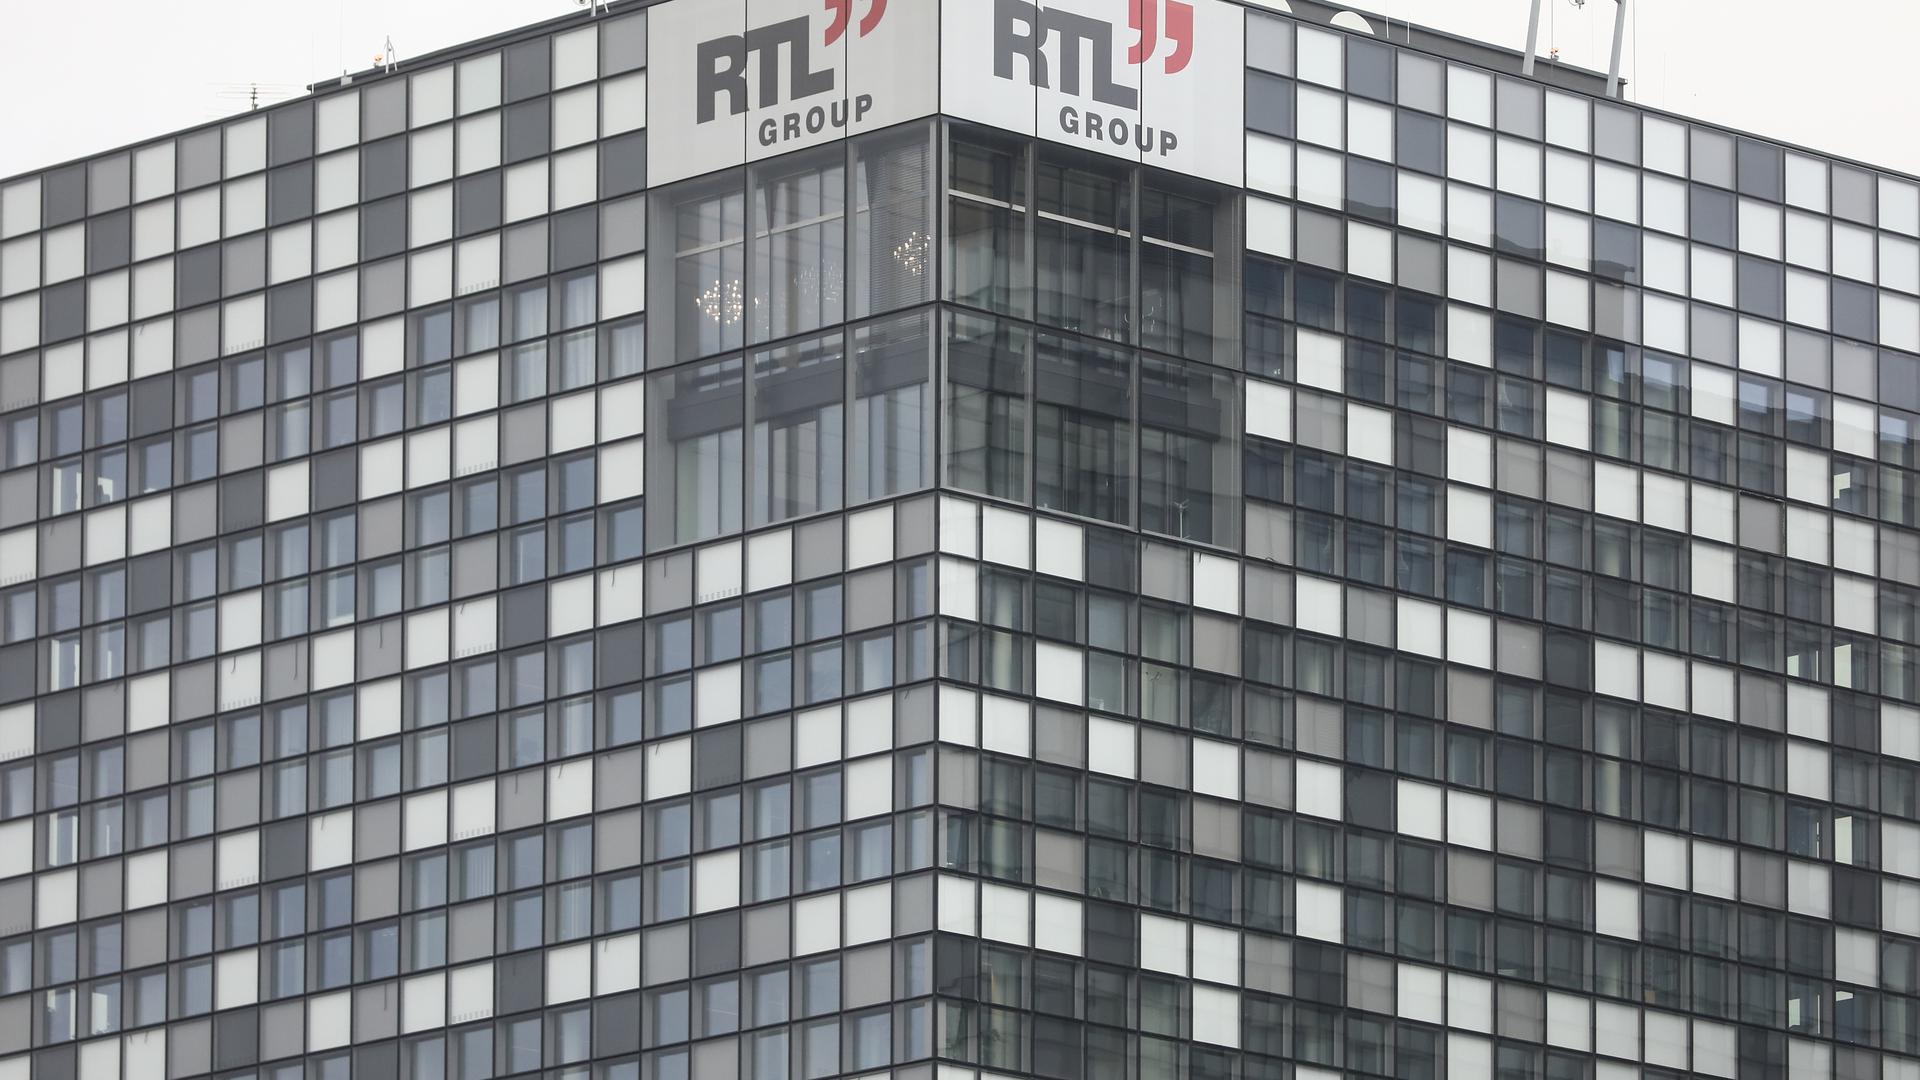 Malgré un chiffre d'affaires en baisse, RTL Group connaît une forte hausse des abonnements à ses plateformes de streaming